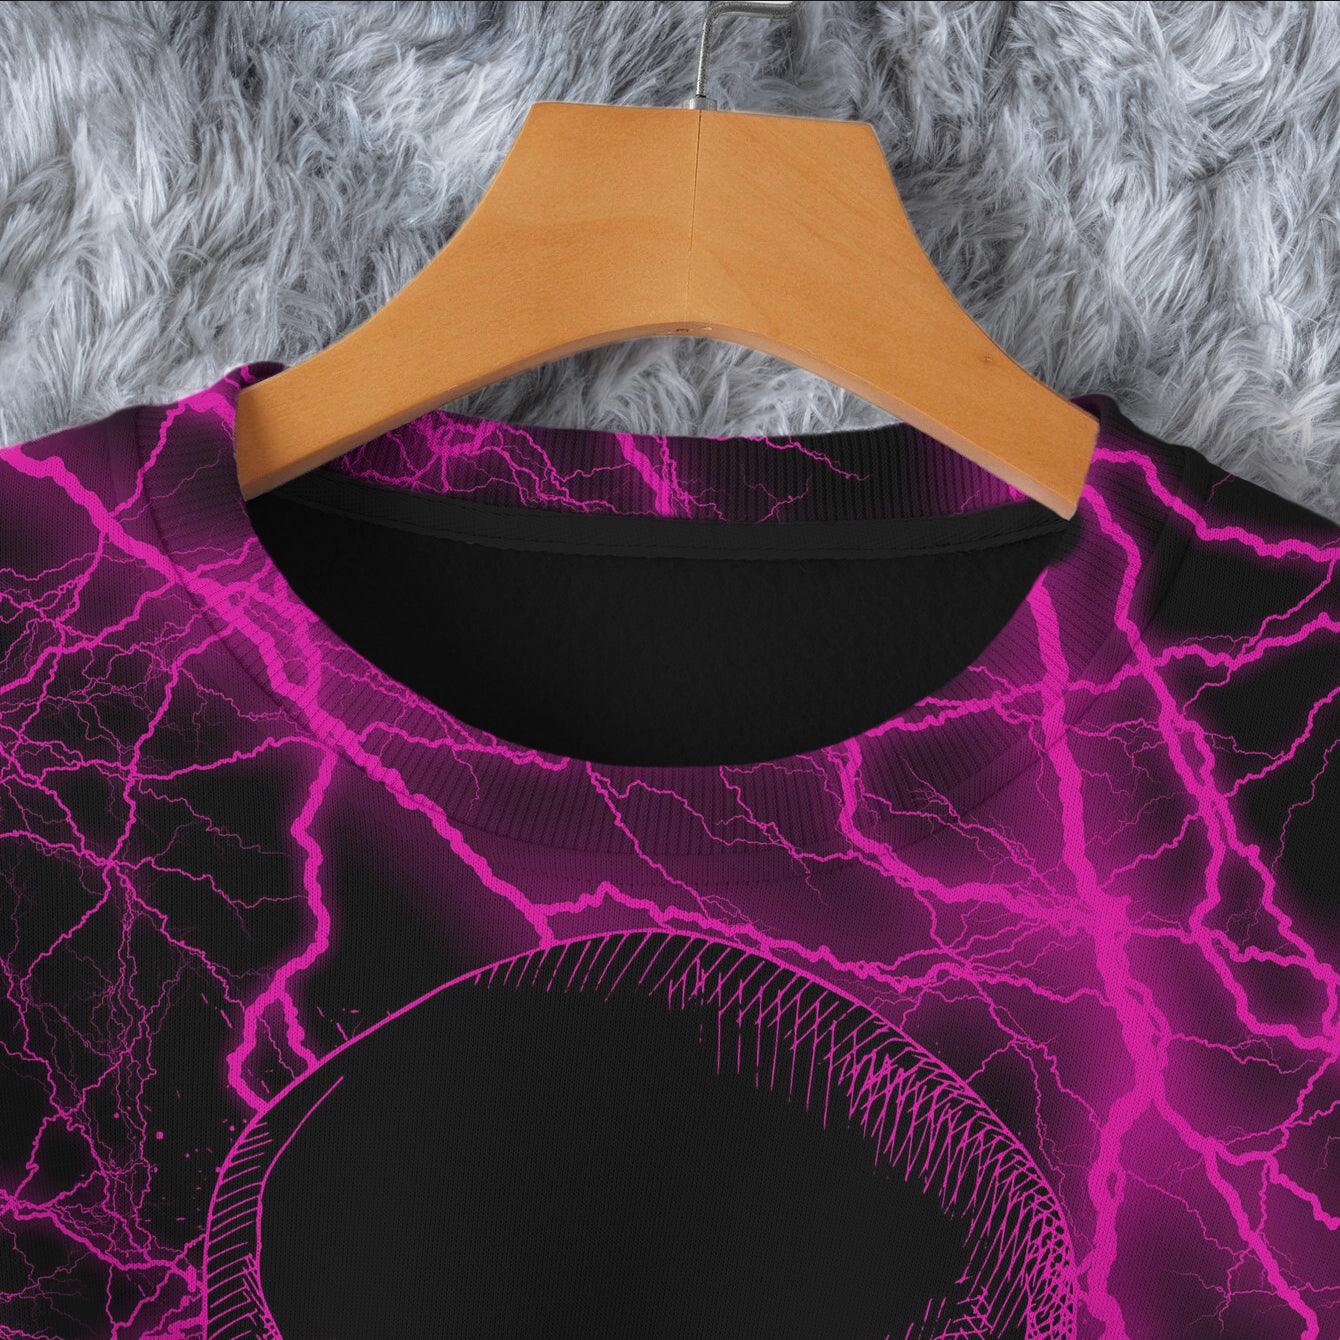 Skull Thunder Pink Combo Long Sleeve Sweatshirt and Leggings - Wonder Skull